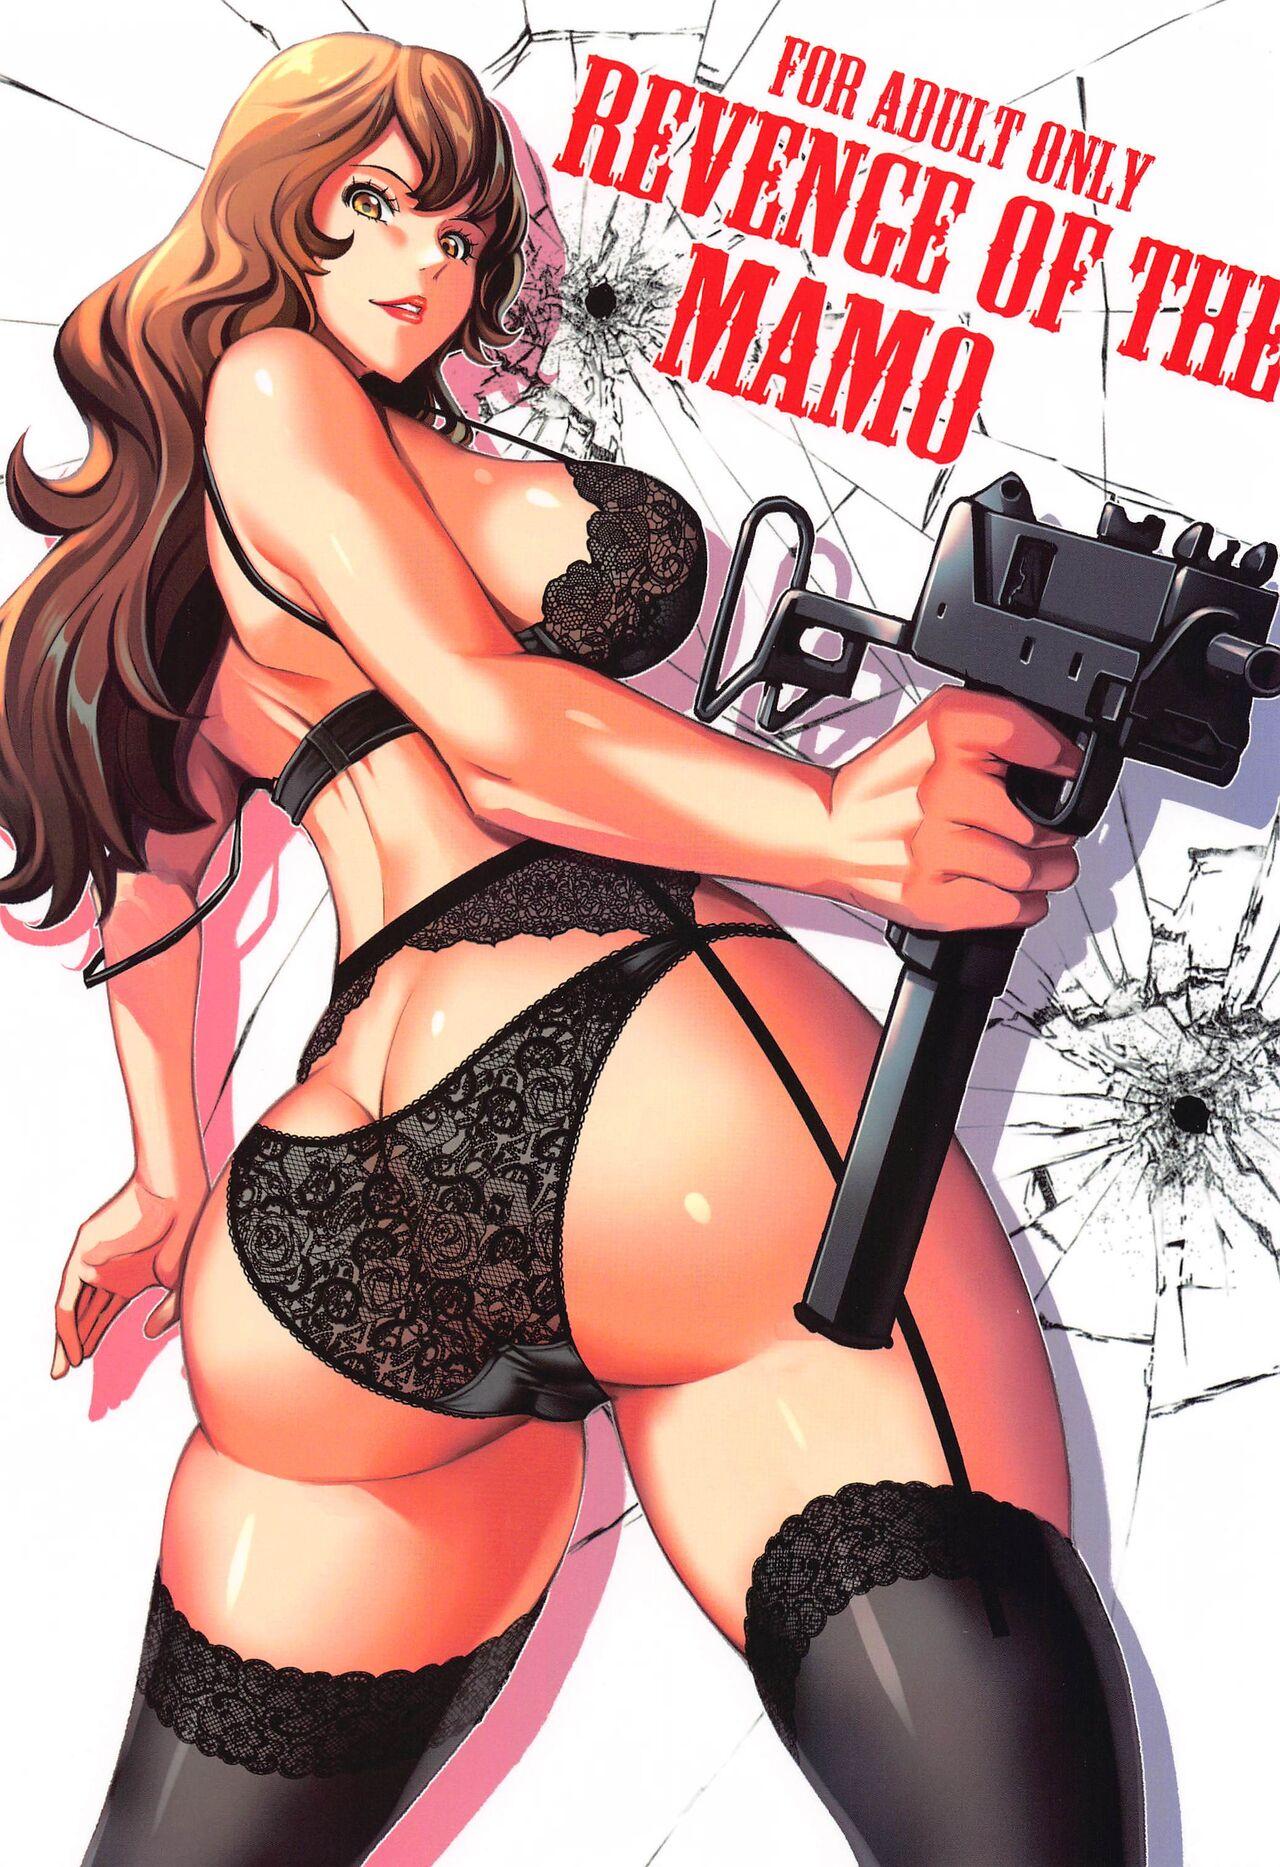 Free Rough Sex Mamo no Fukushuu - REVENGE OF THE MAMO - Lupin iii Hot Couple Sex - Picture 1